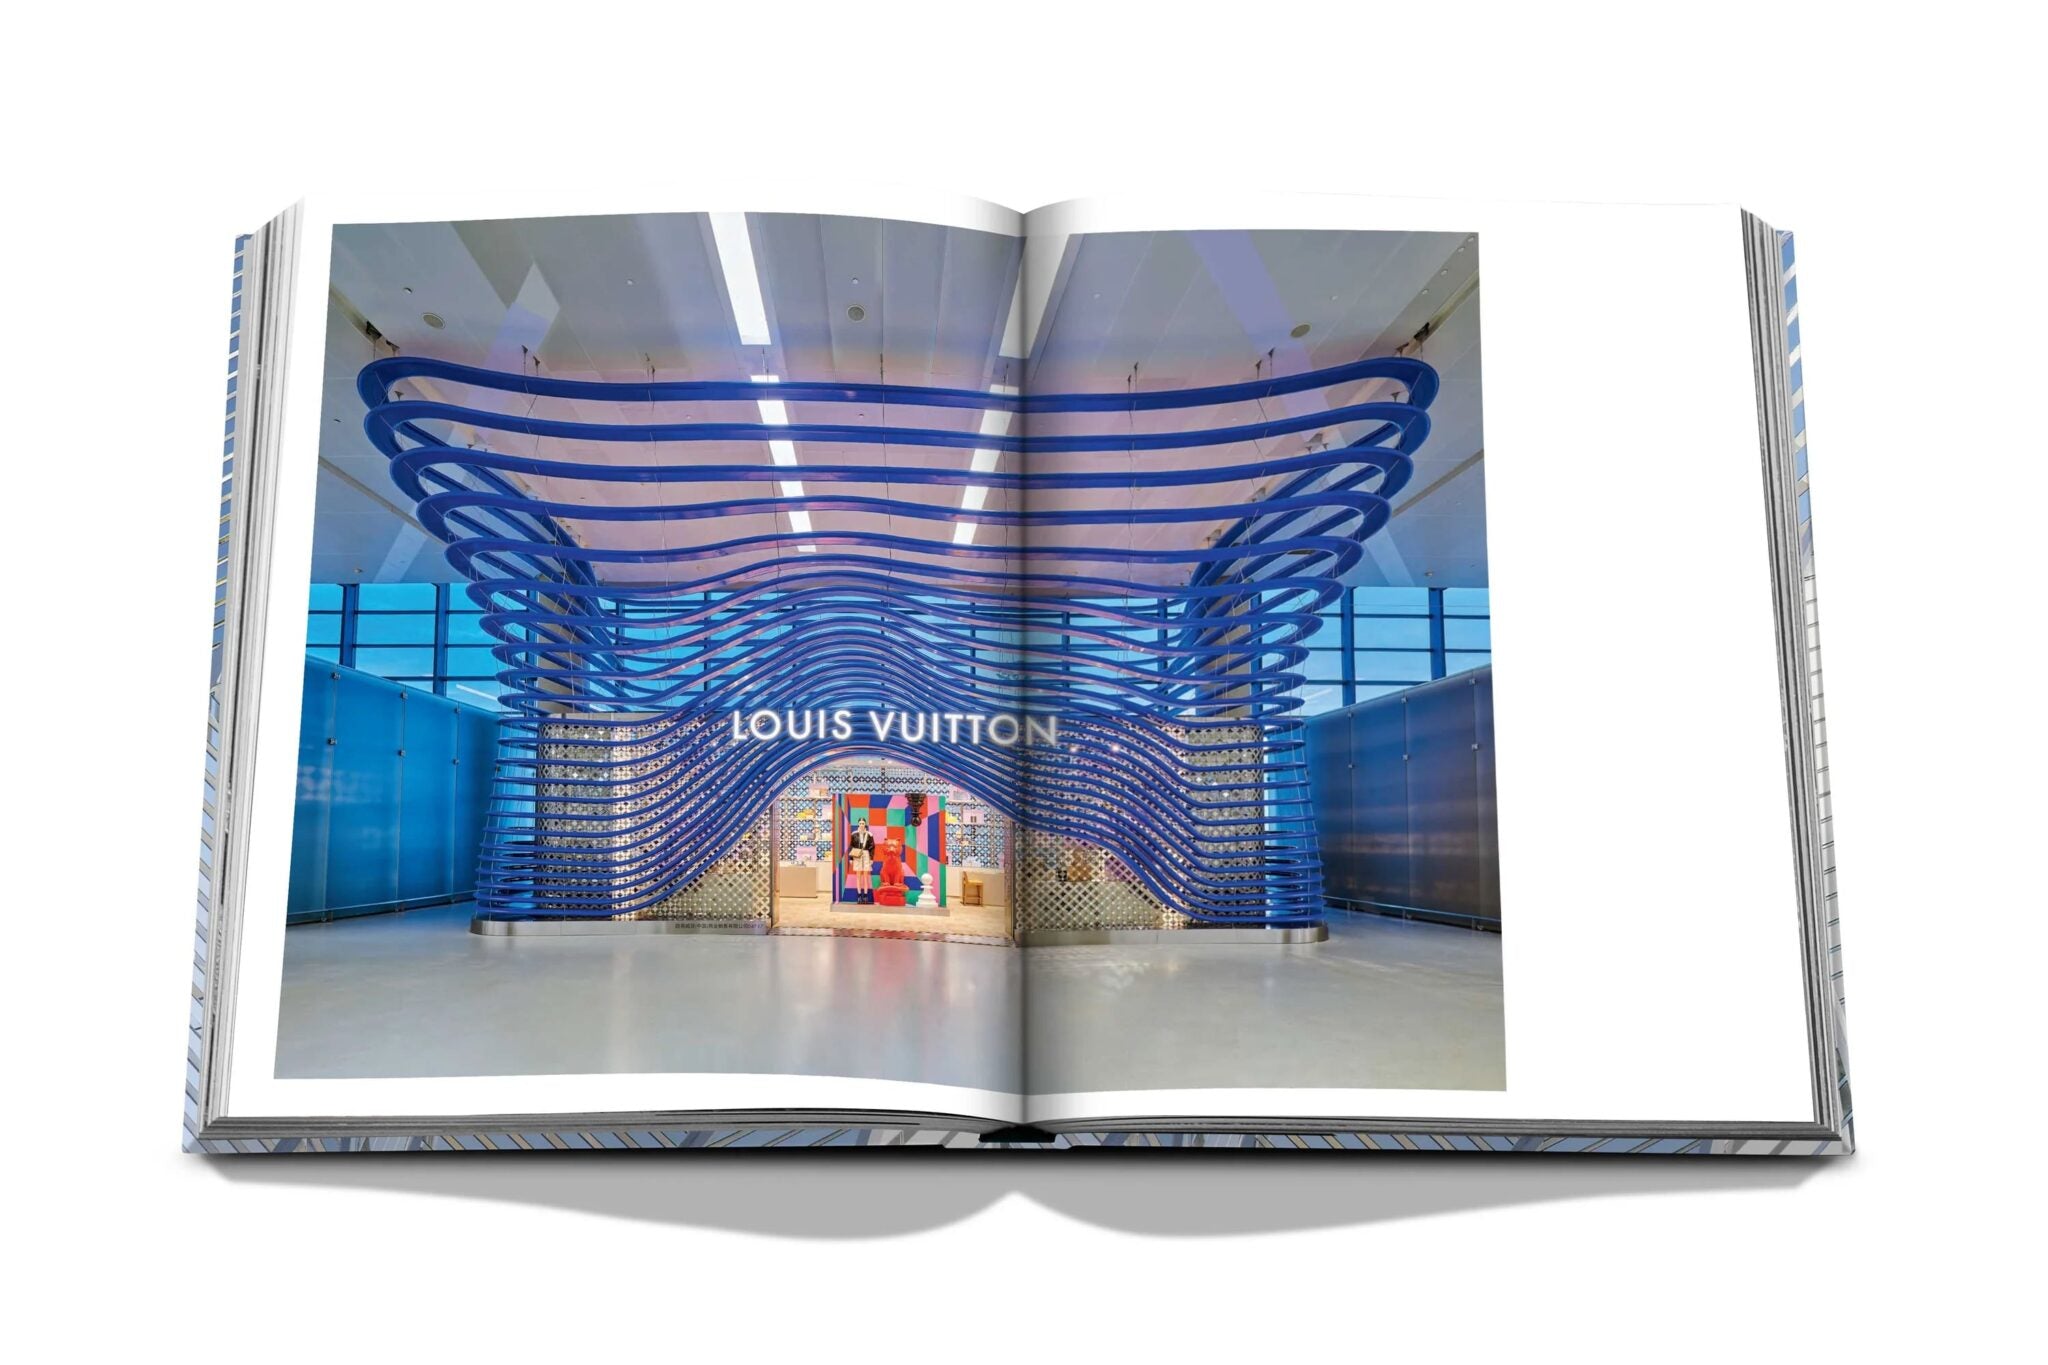 Assouline Louis Vuitton Skin: Architektur des Luxus (New York Edition)